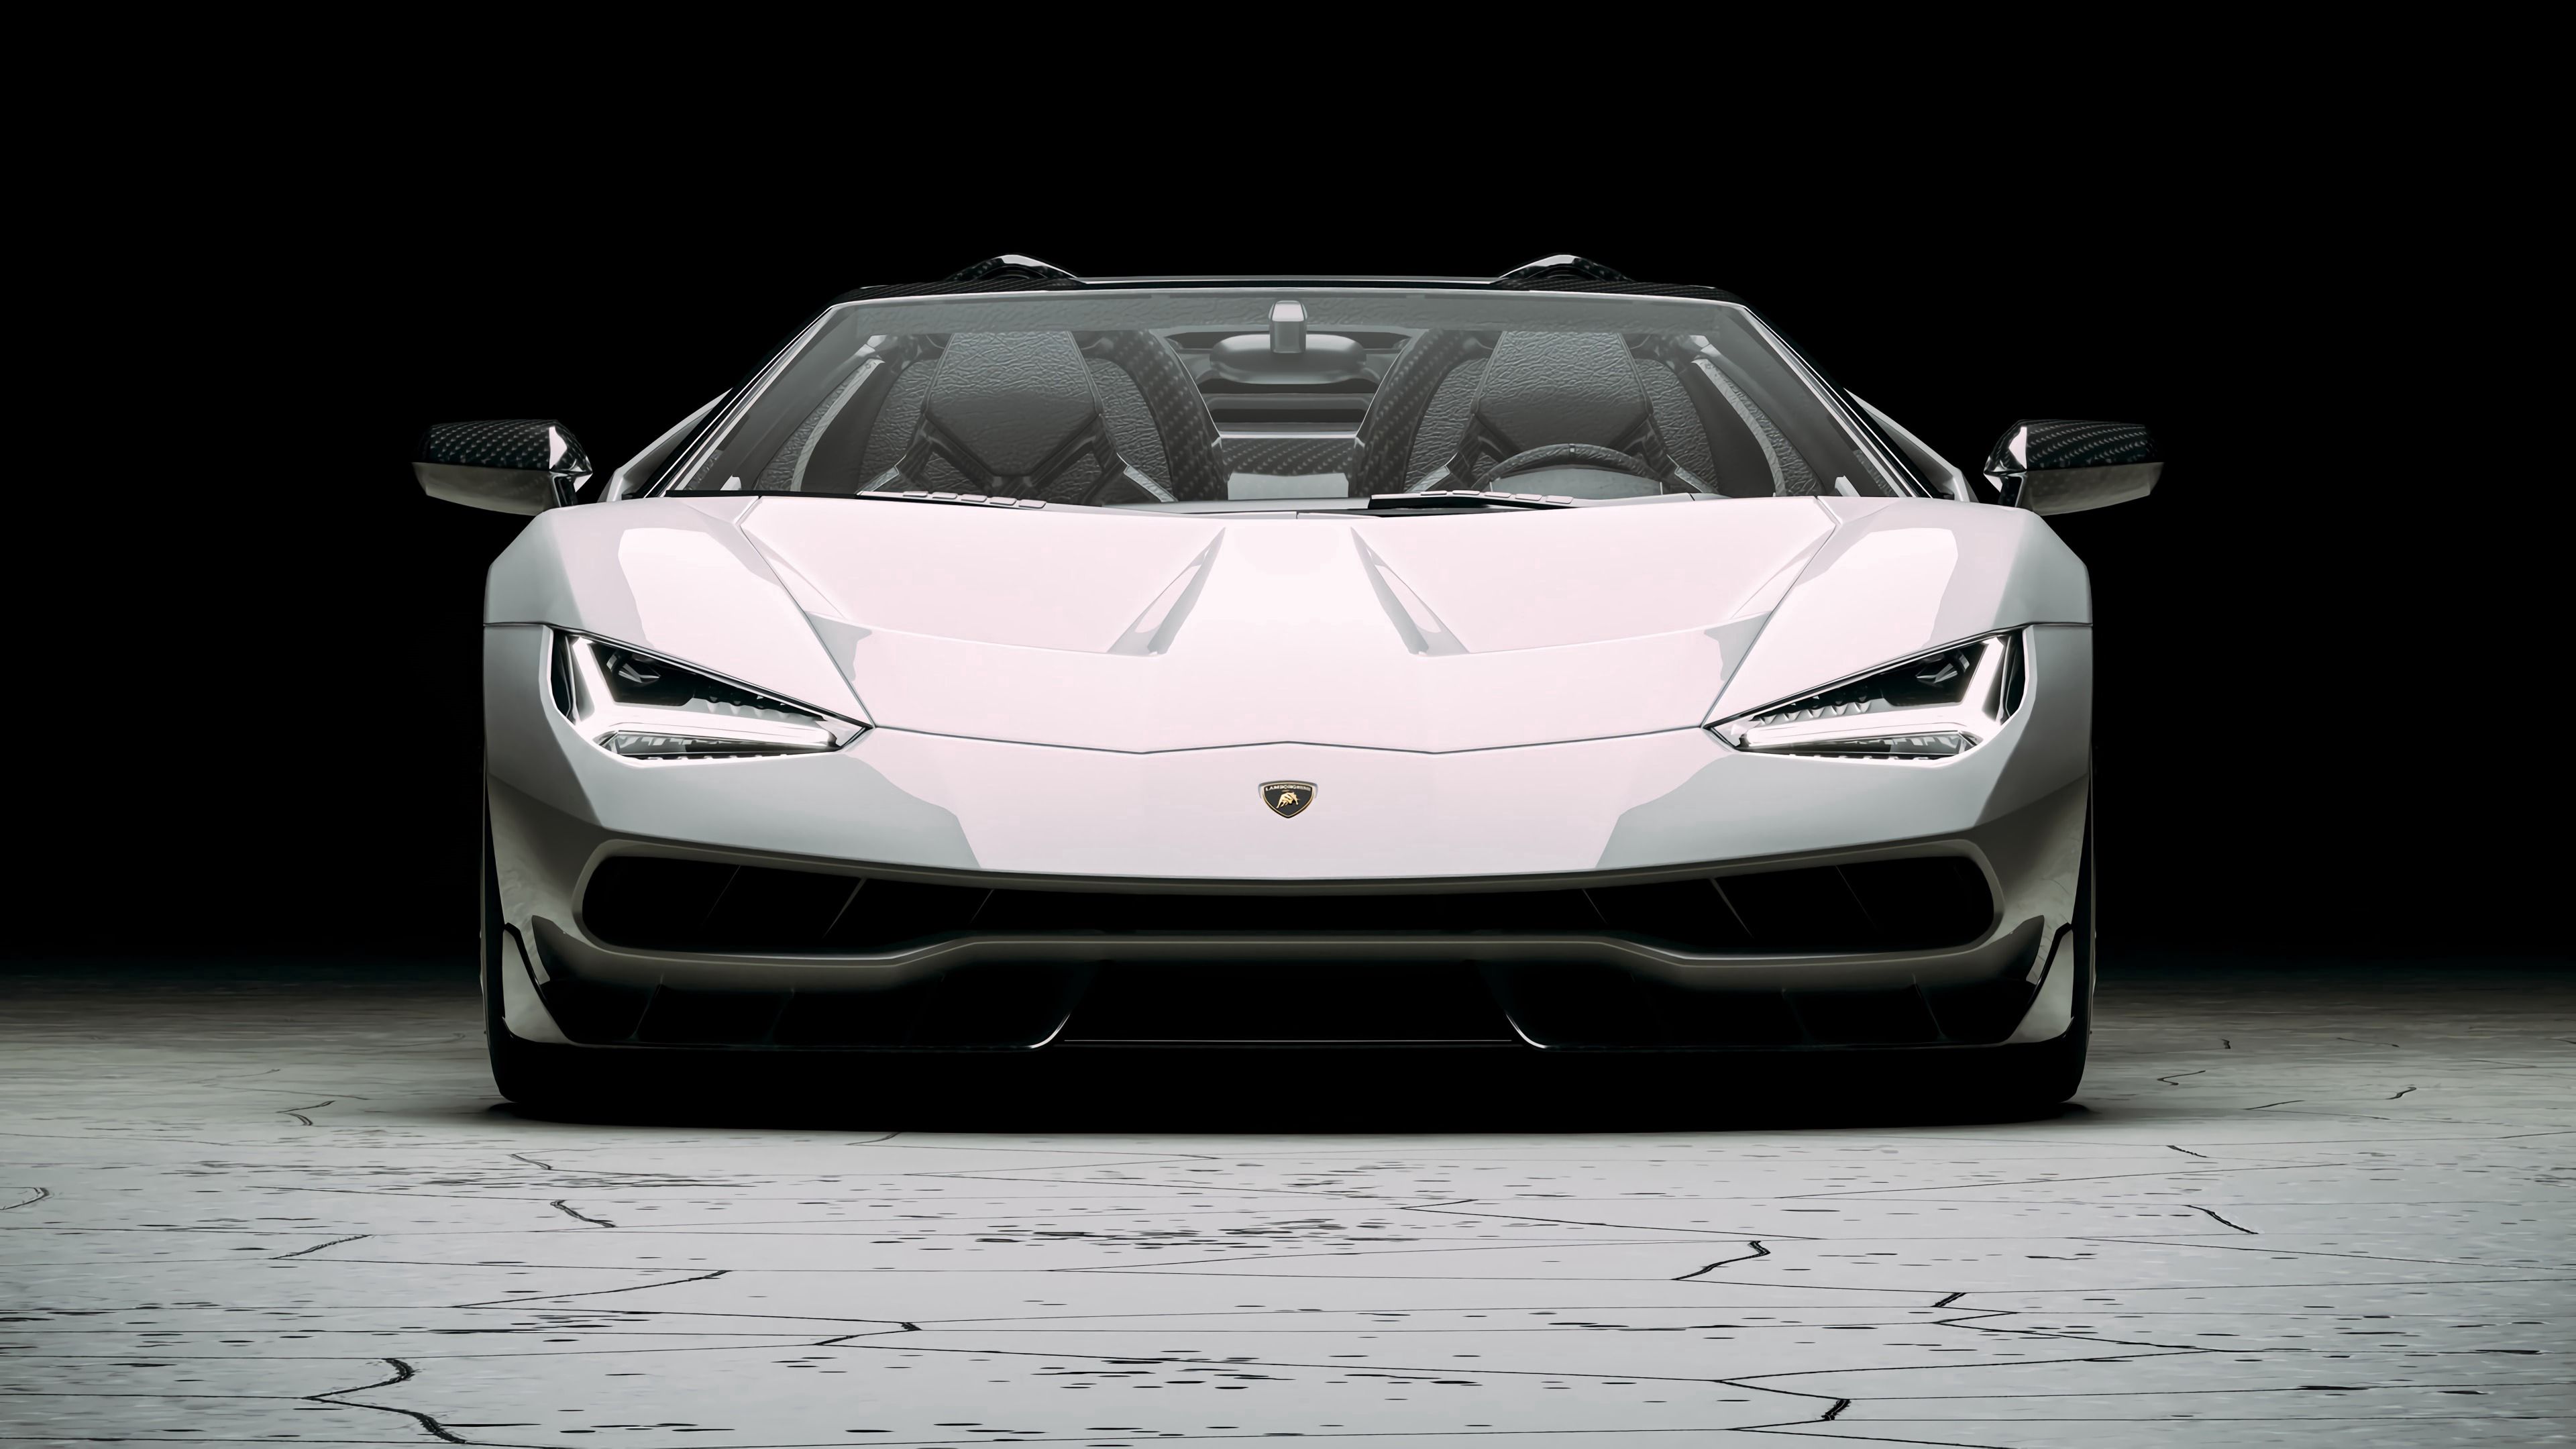 Télécharger des fonds d'écran Lamborghini Centenario HD